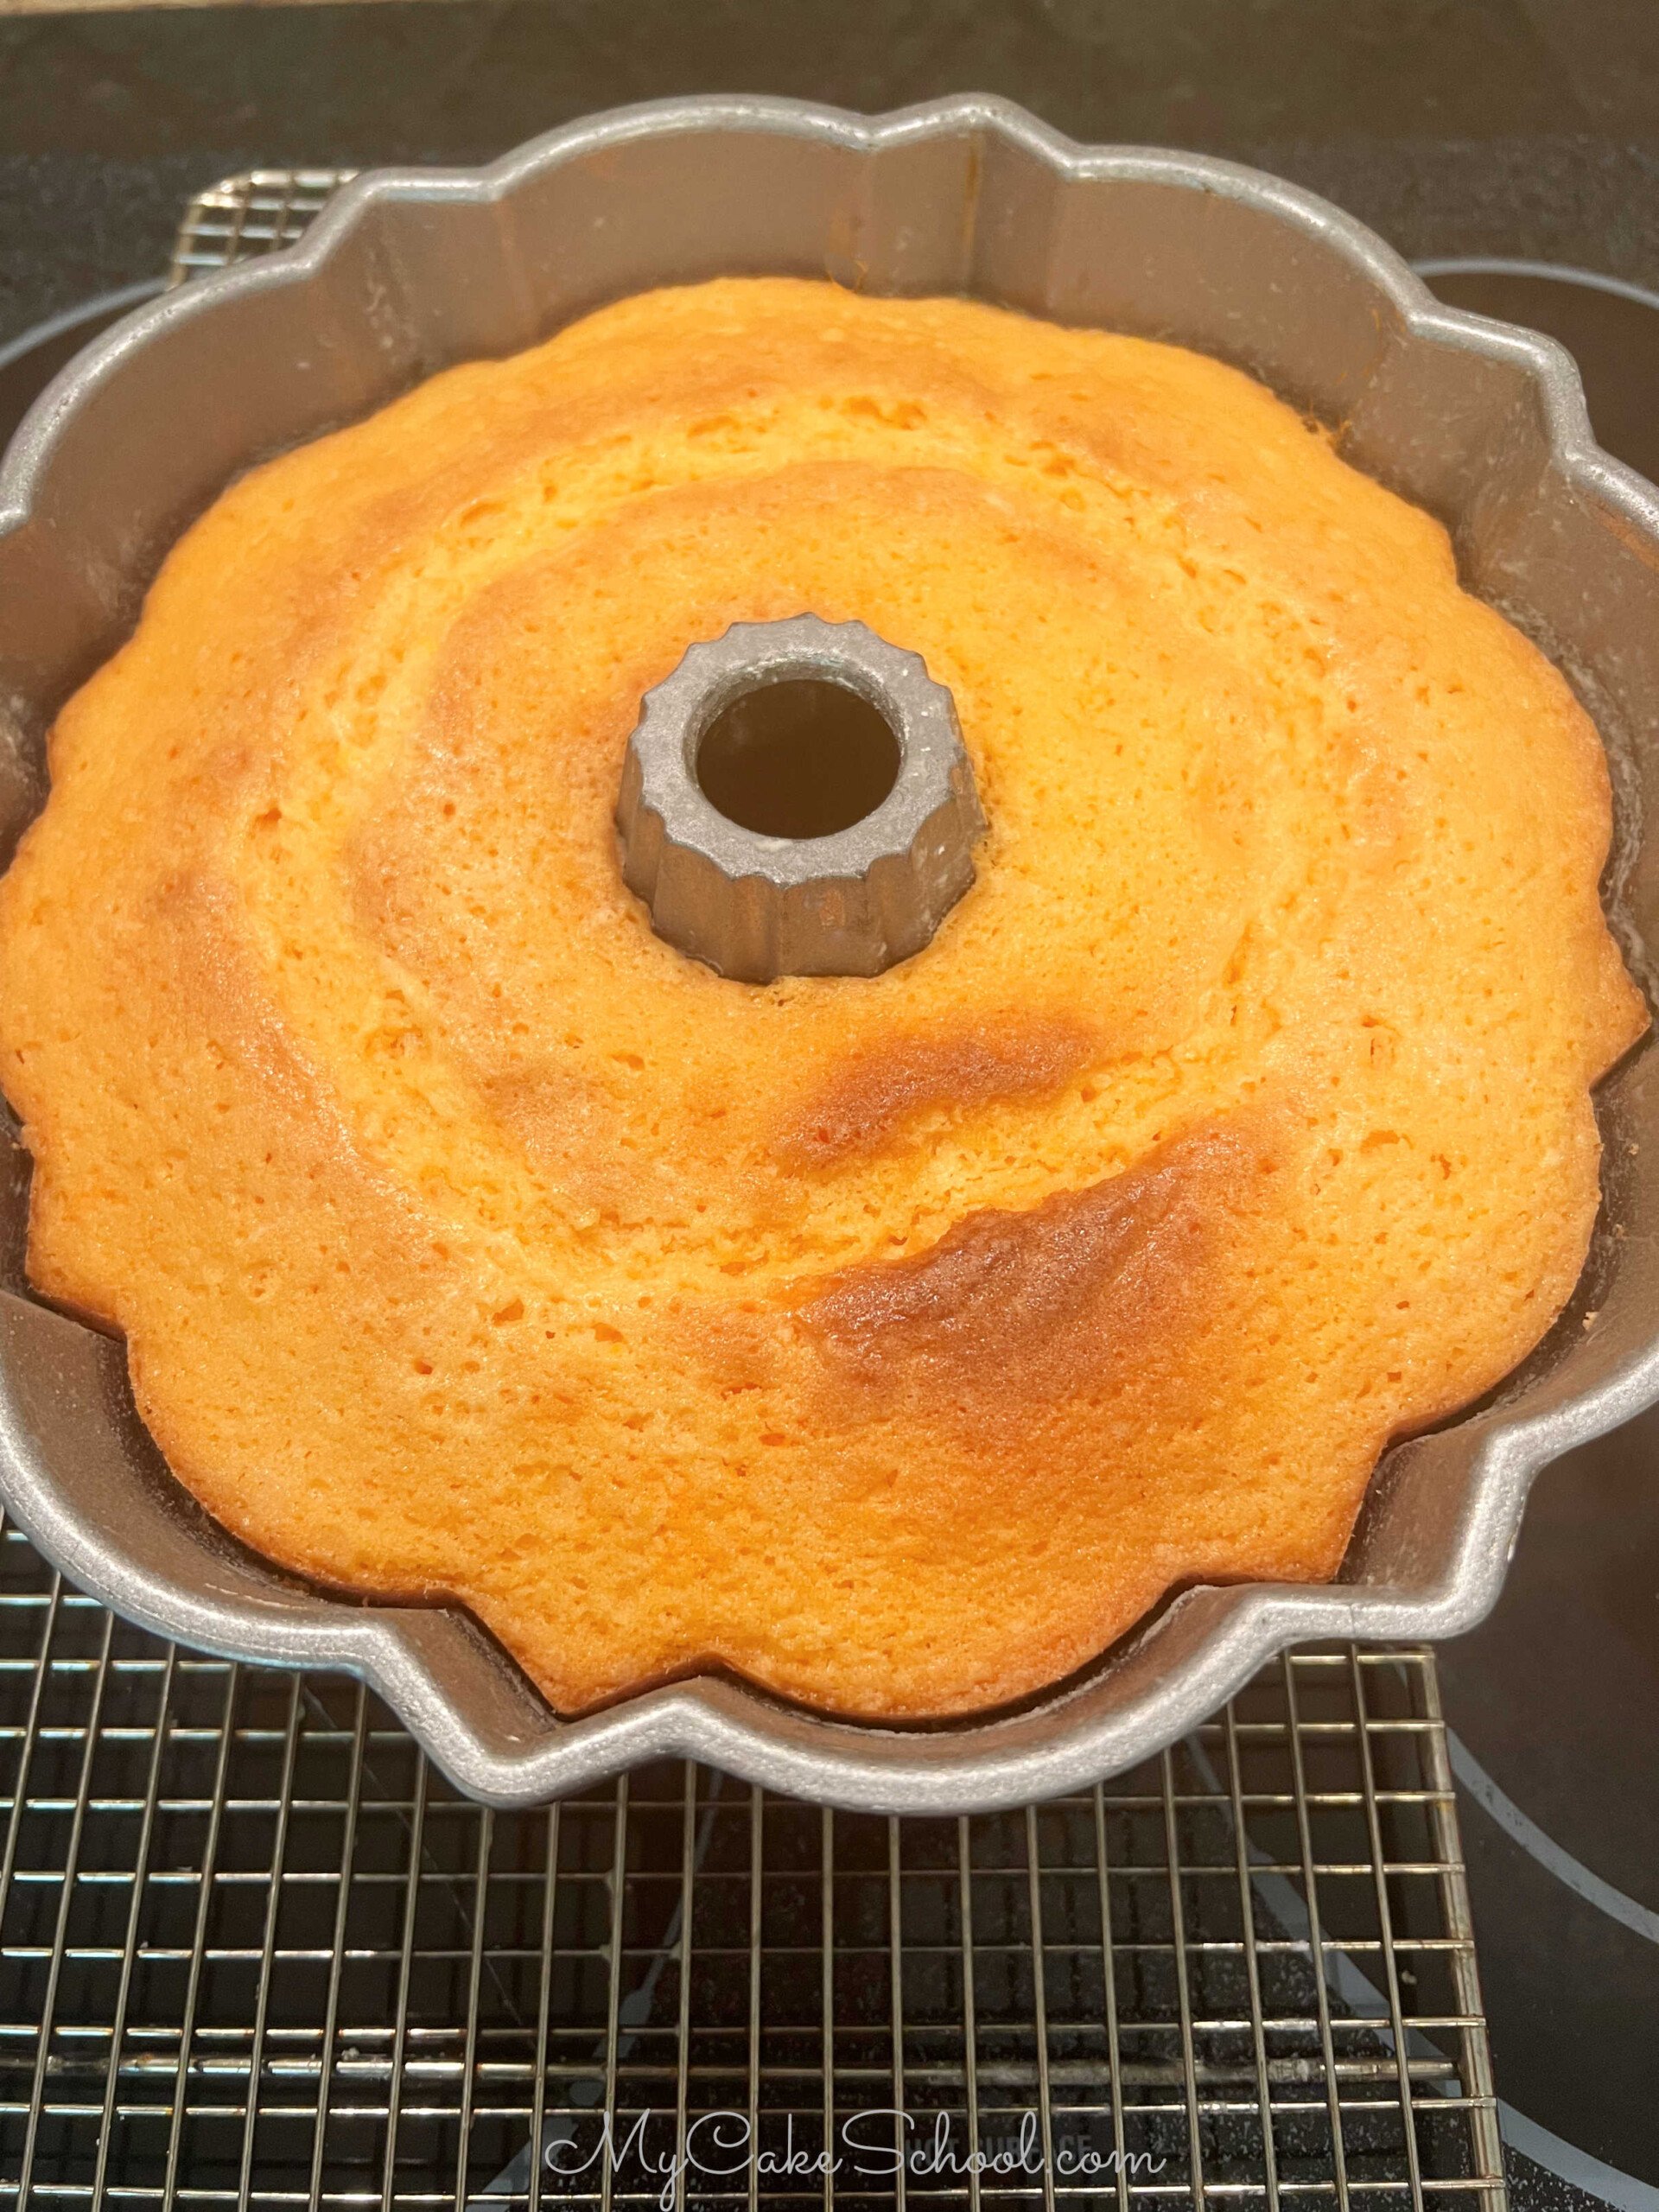 Freshly baked Orange Bundt Cake, cooling on wire rack.